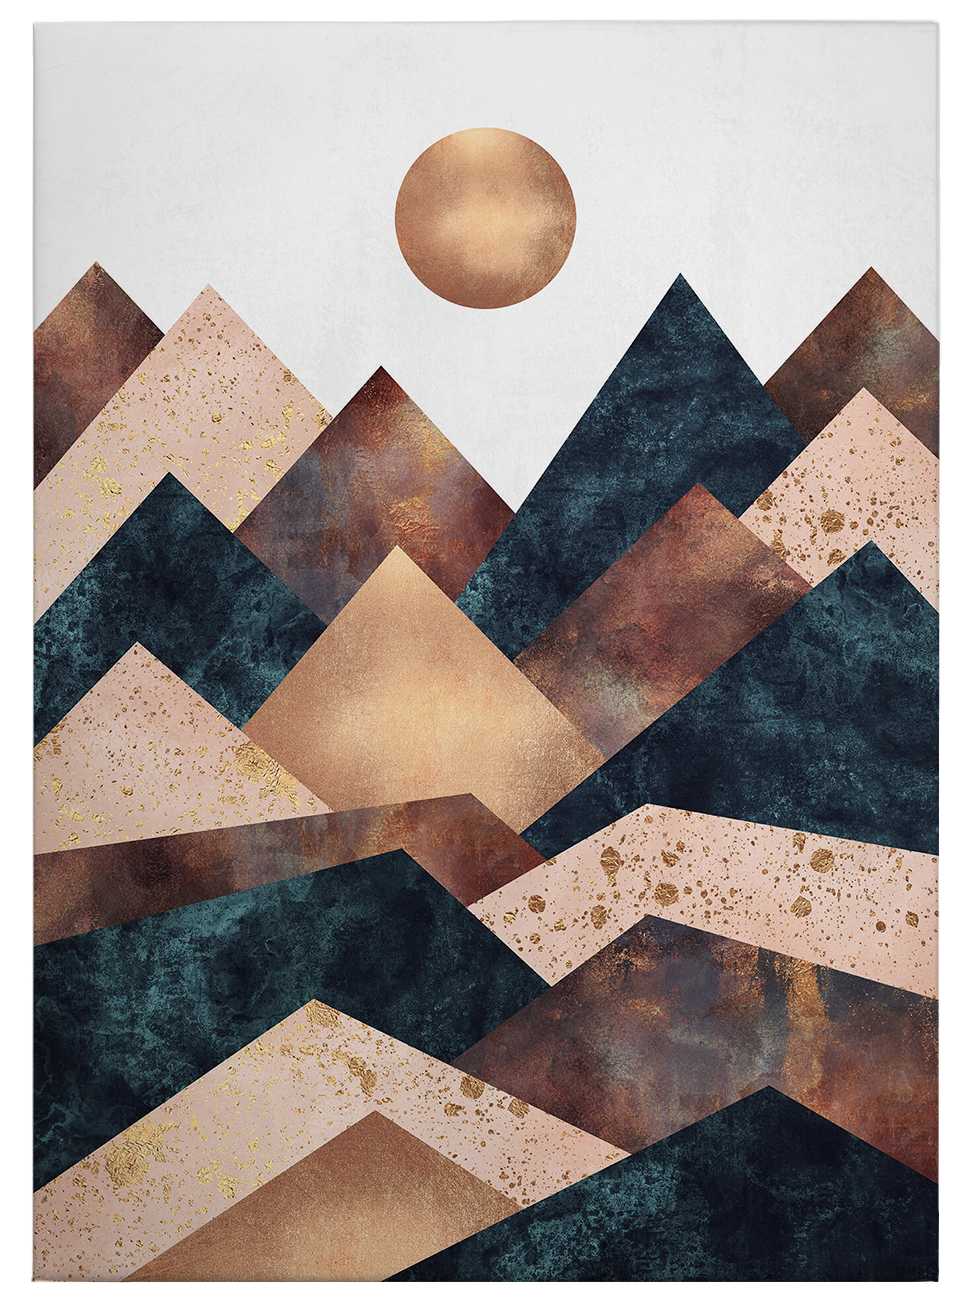             Quadro su tela "Giornata d'autunno in montagna" di Fredriksson - 0,50 m x 0,70 m
        